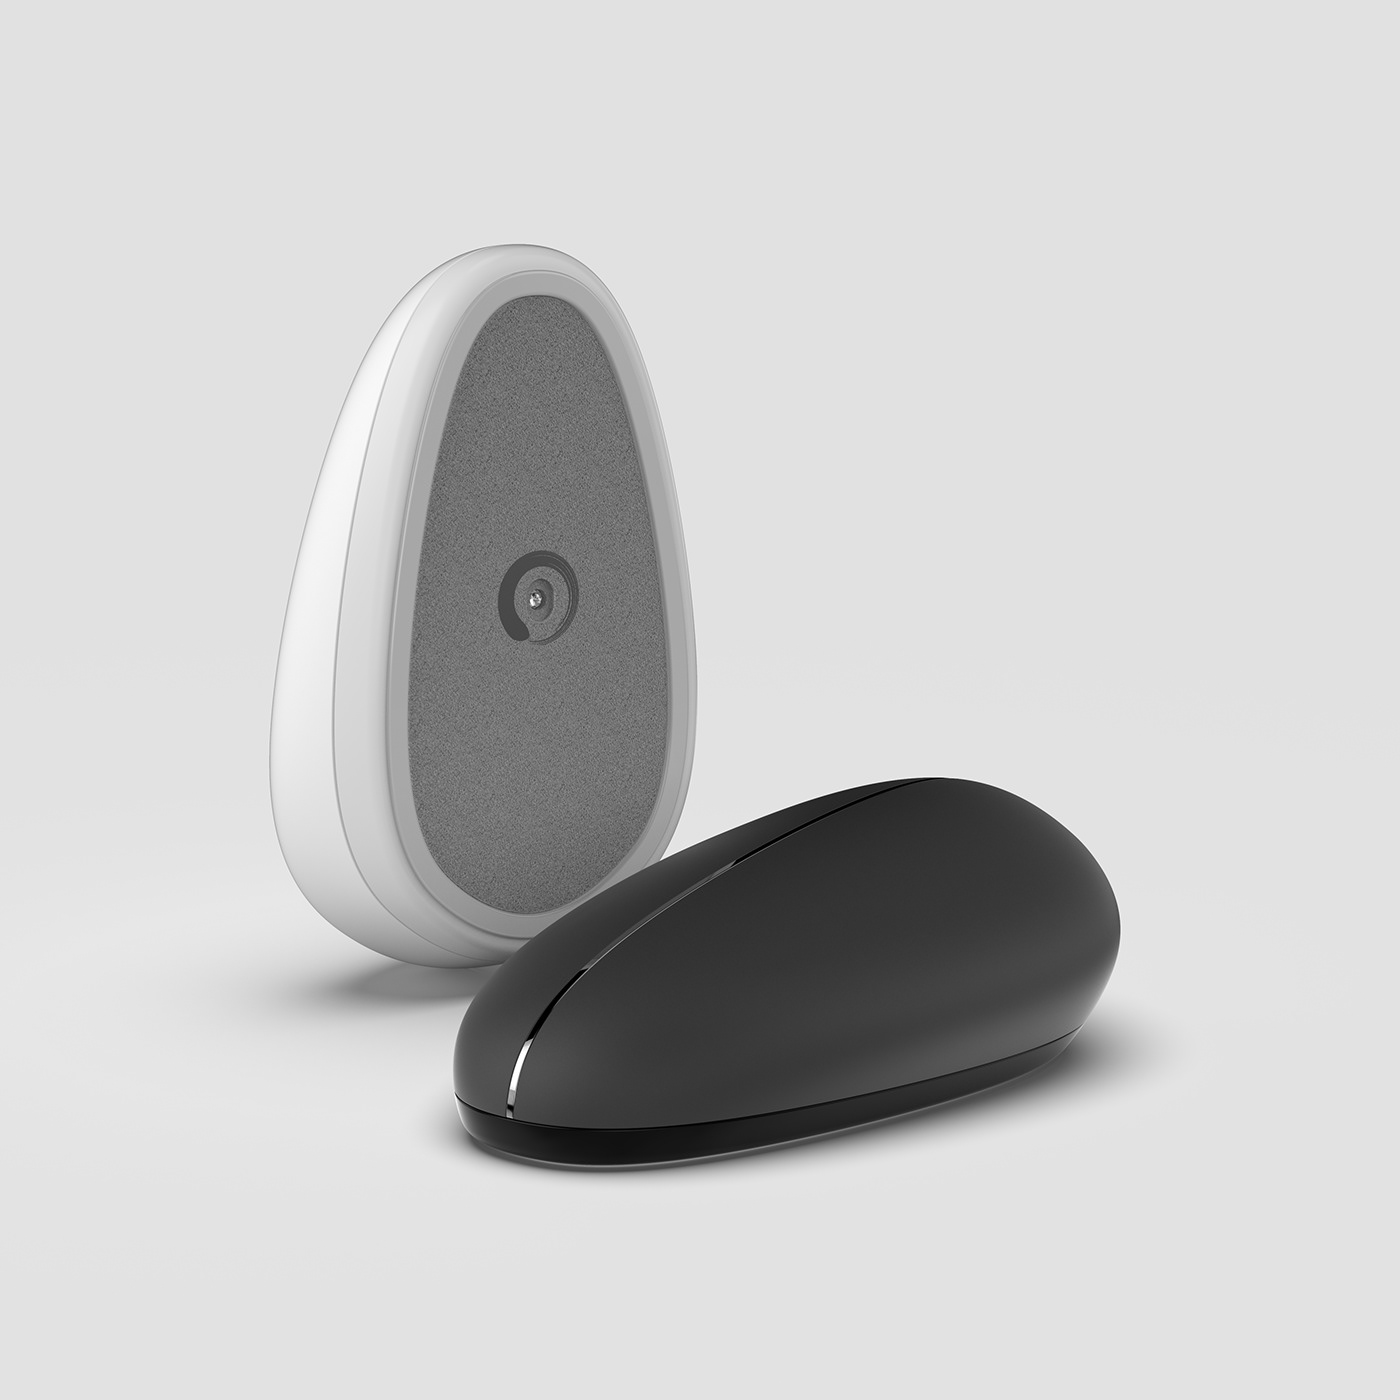 concept concept design details industrial design  minimal monochrome mouse product product design  zen stones